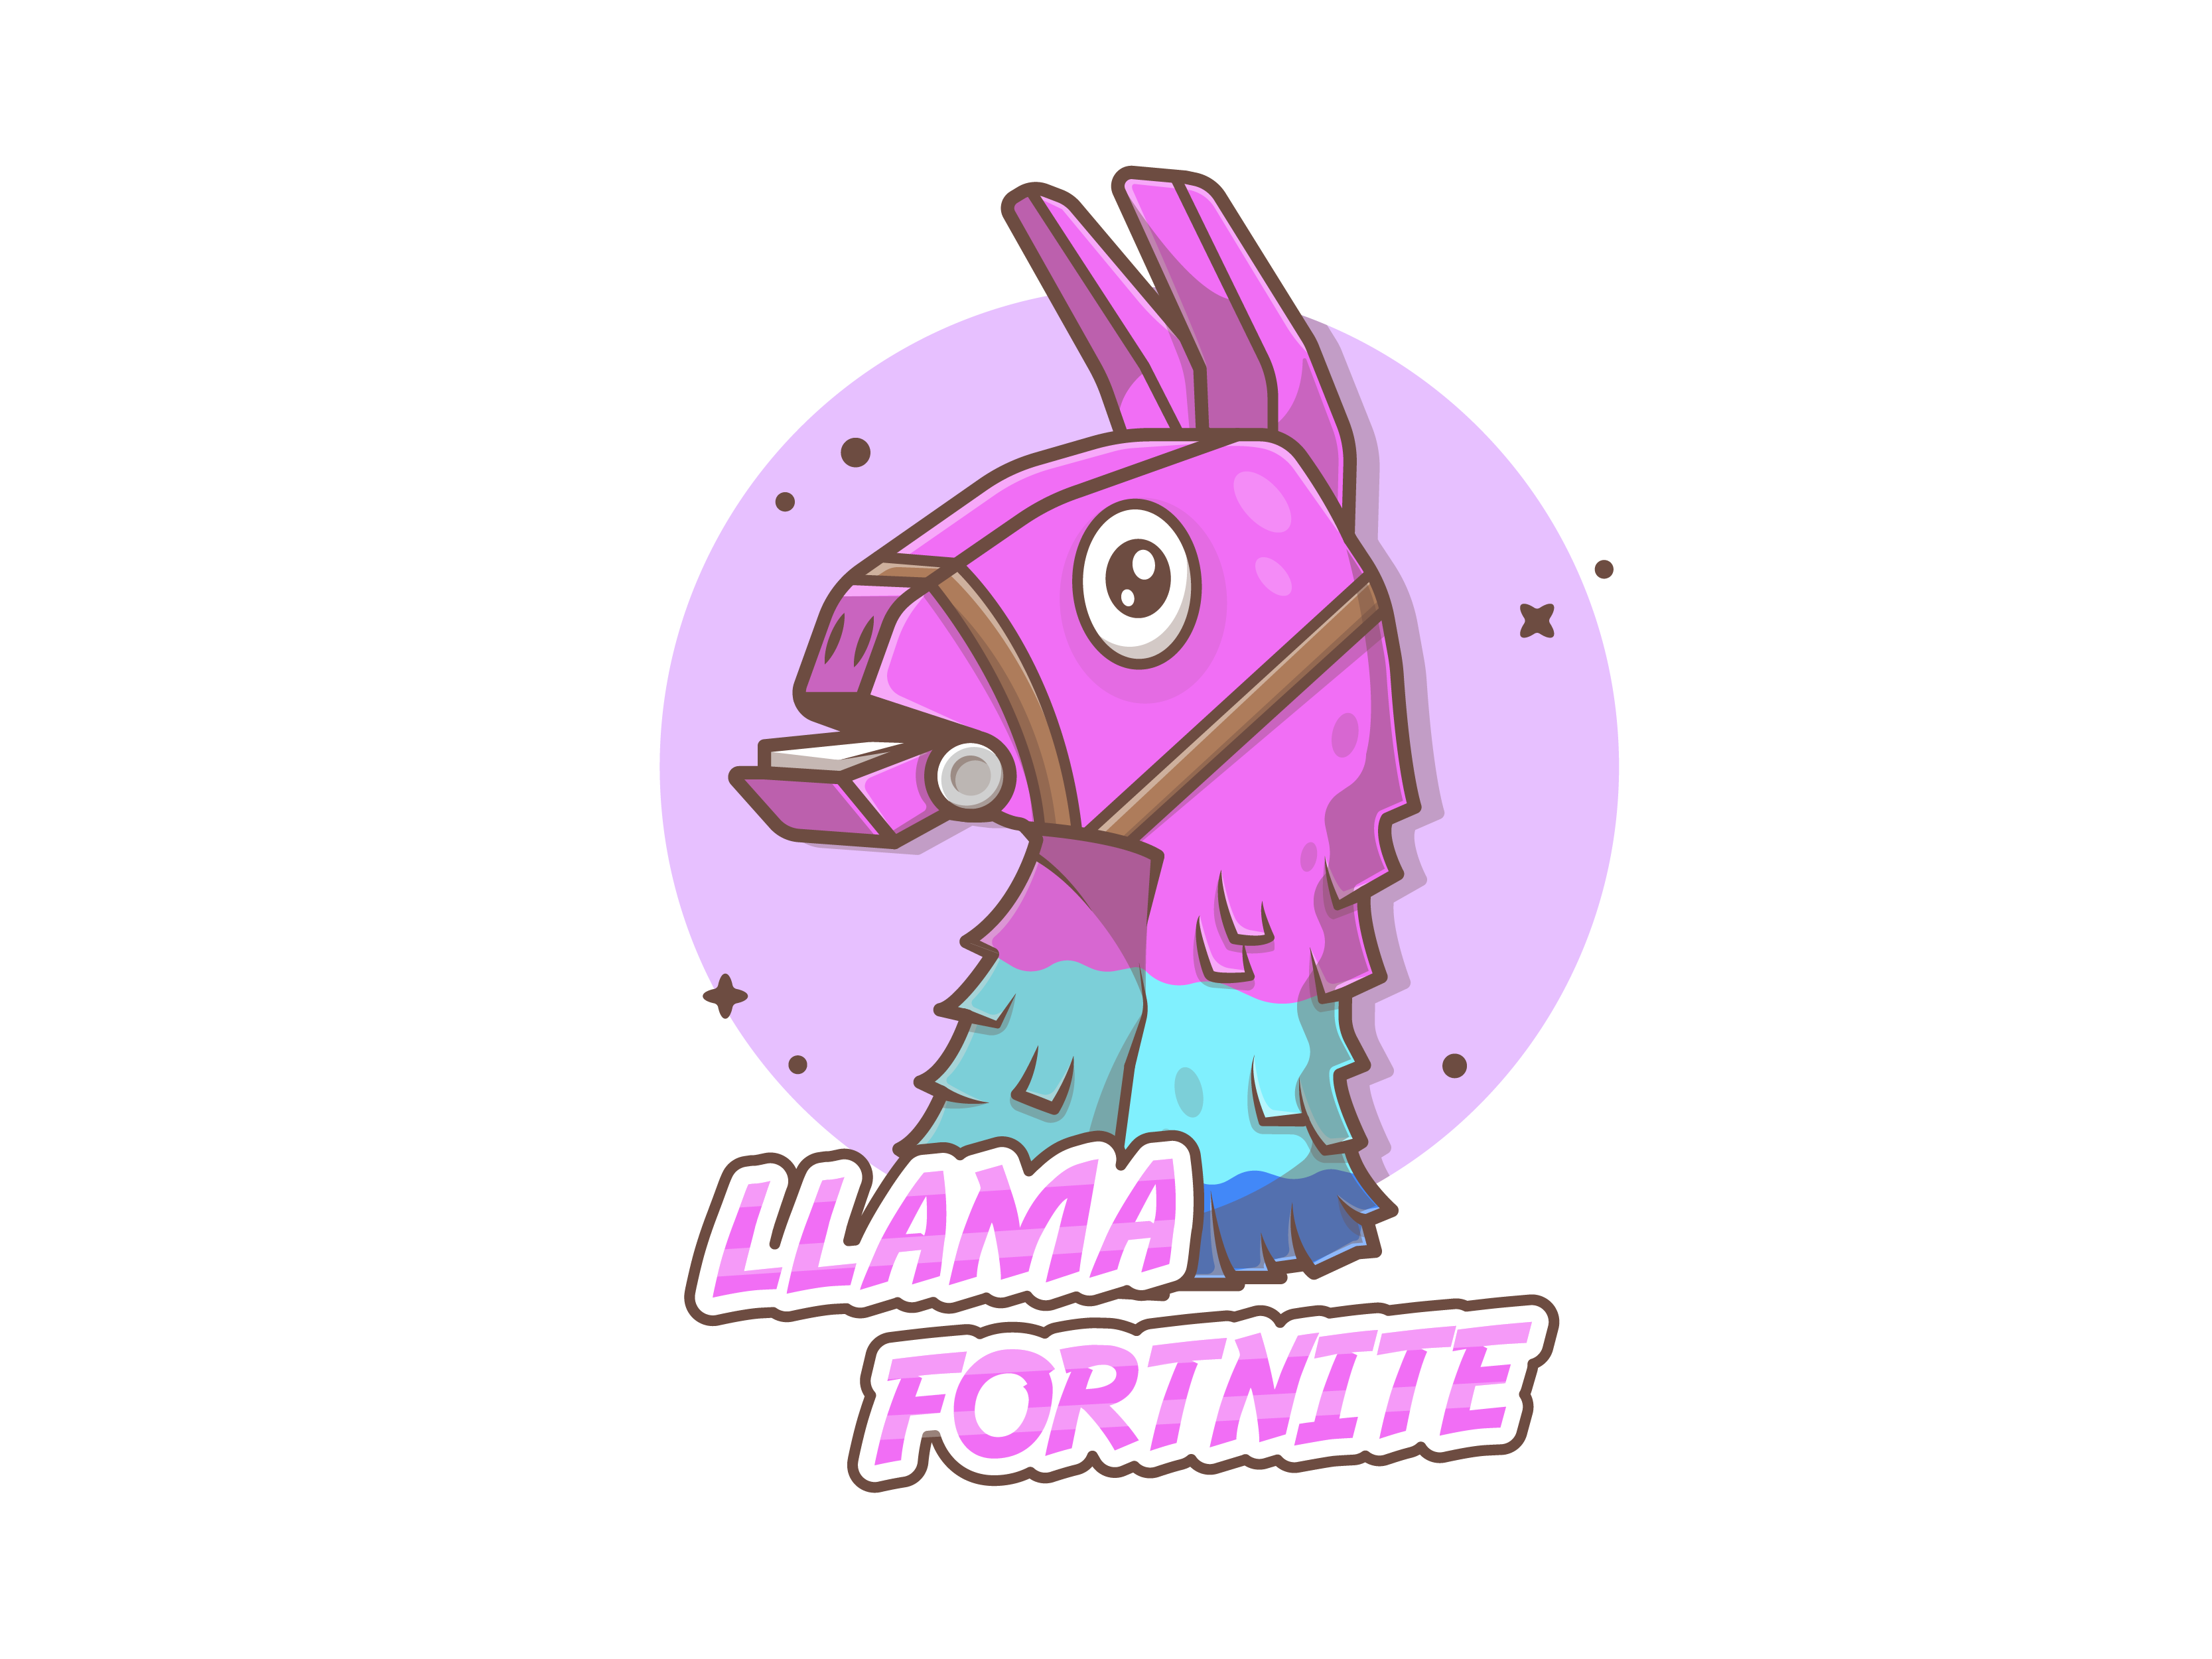 Fortnite llama logo for esports and gaming on Craiyon